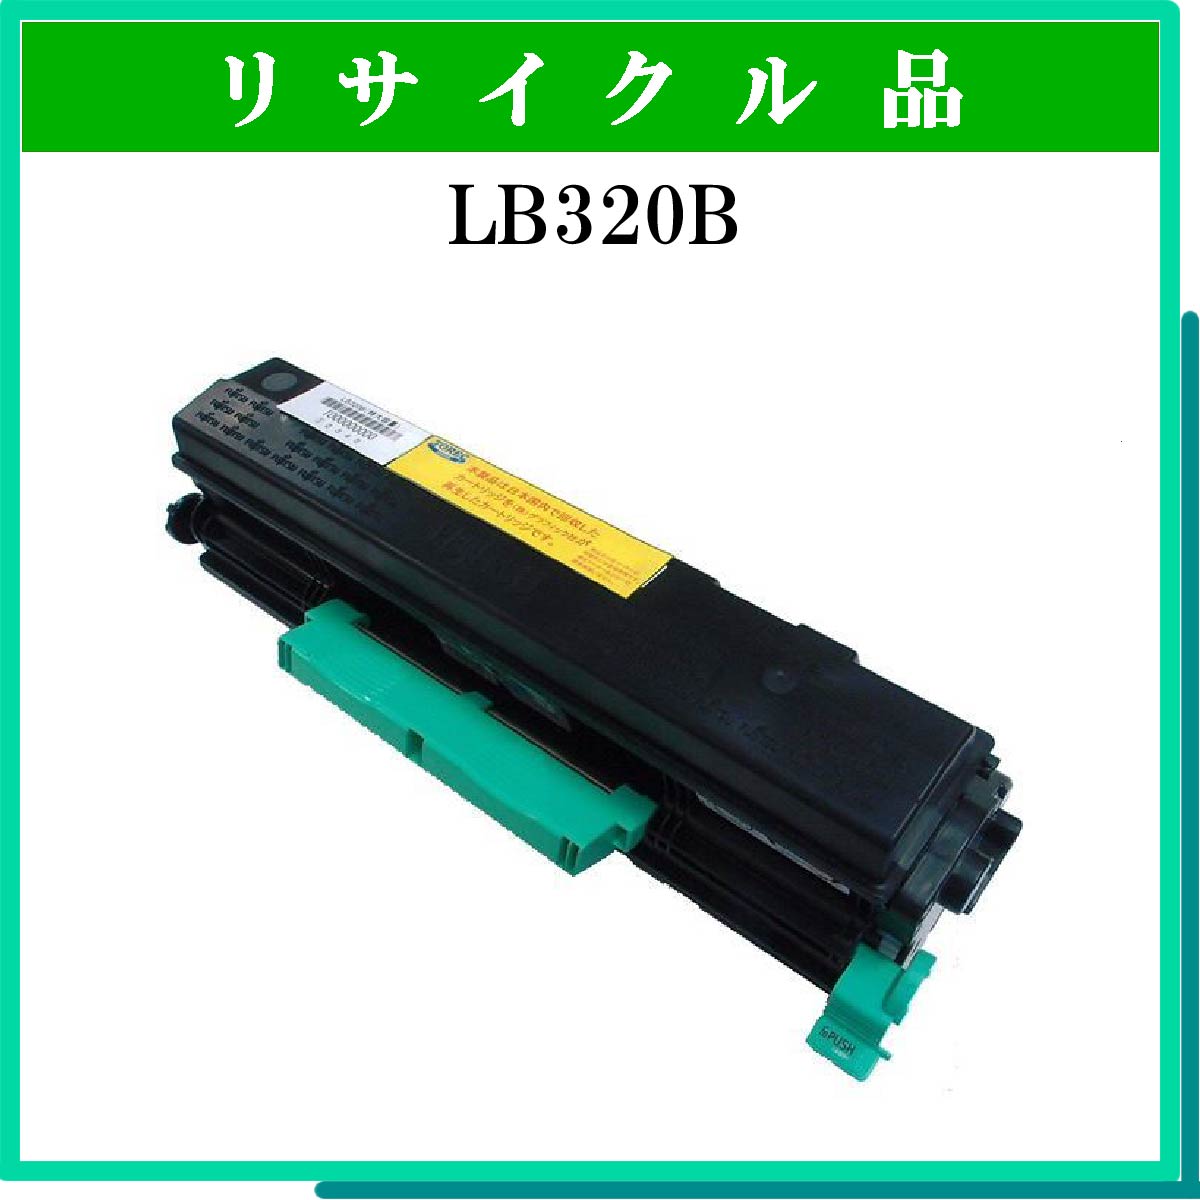 LB320B